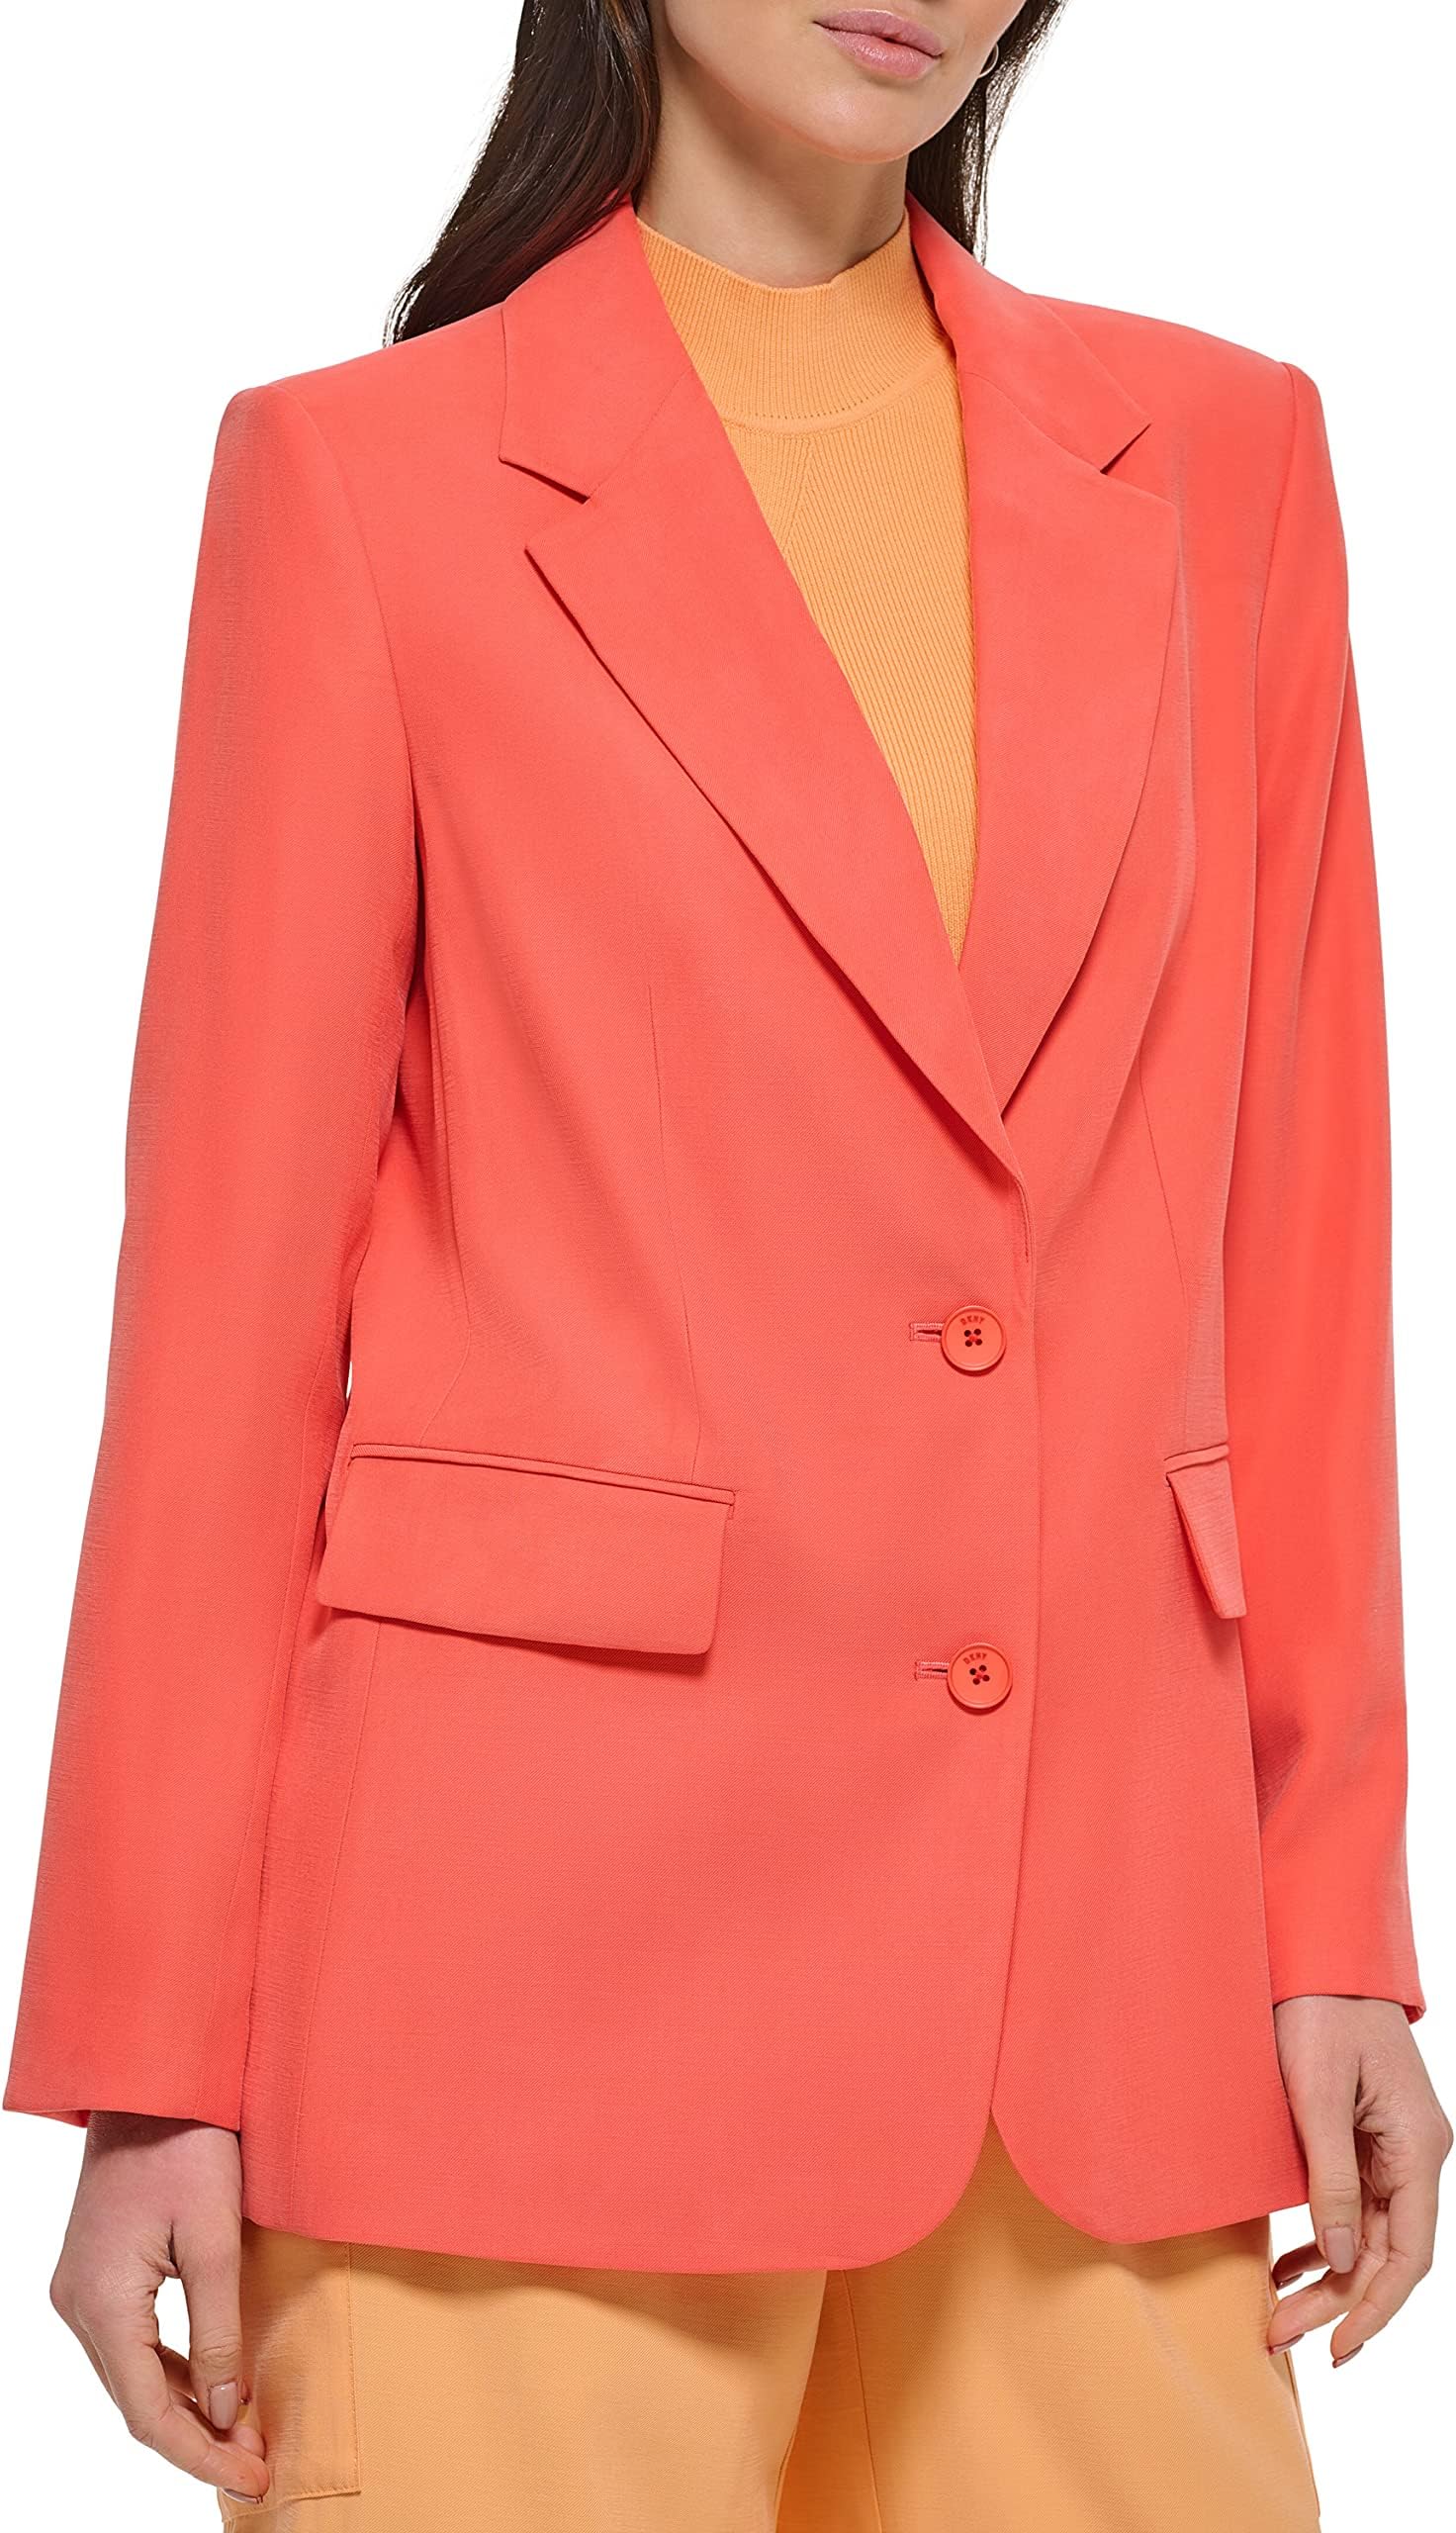 Пиджак на одной пуговице из матового твила DKNY, цвет Persimmon